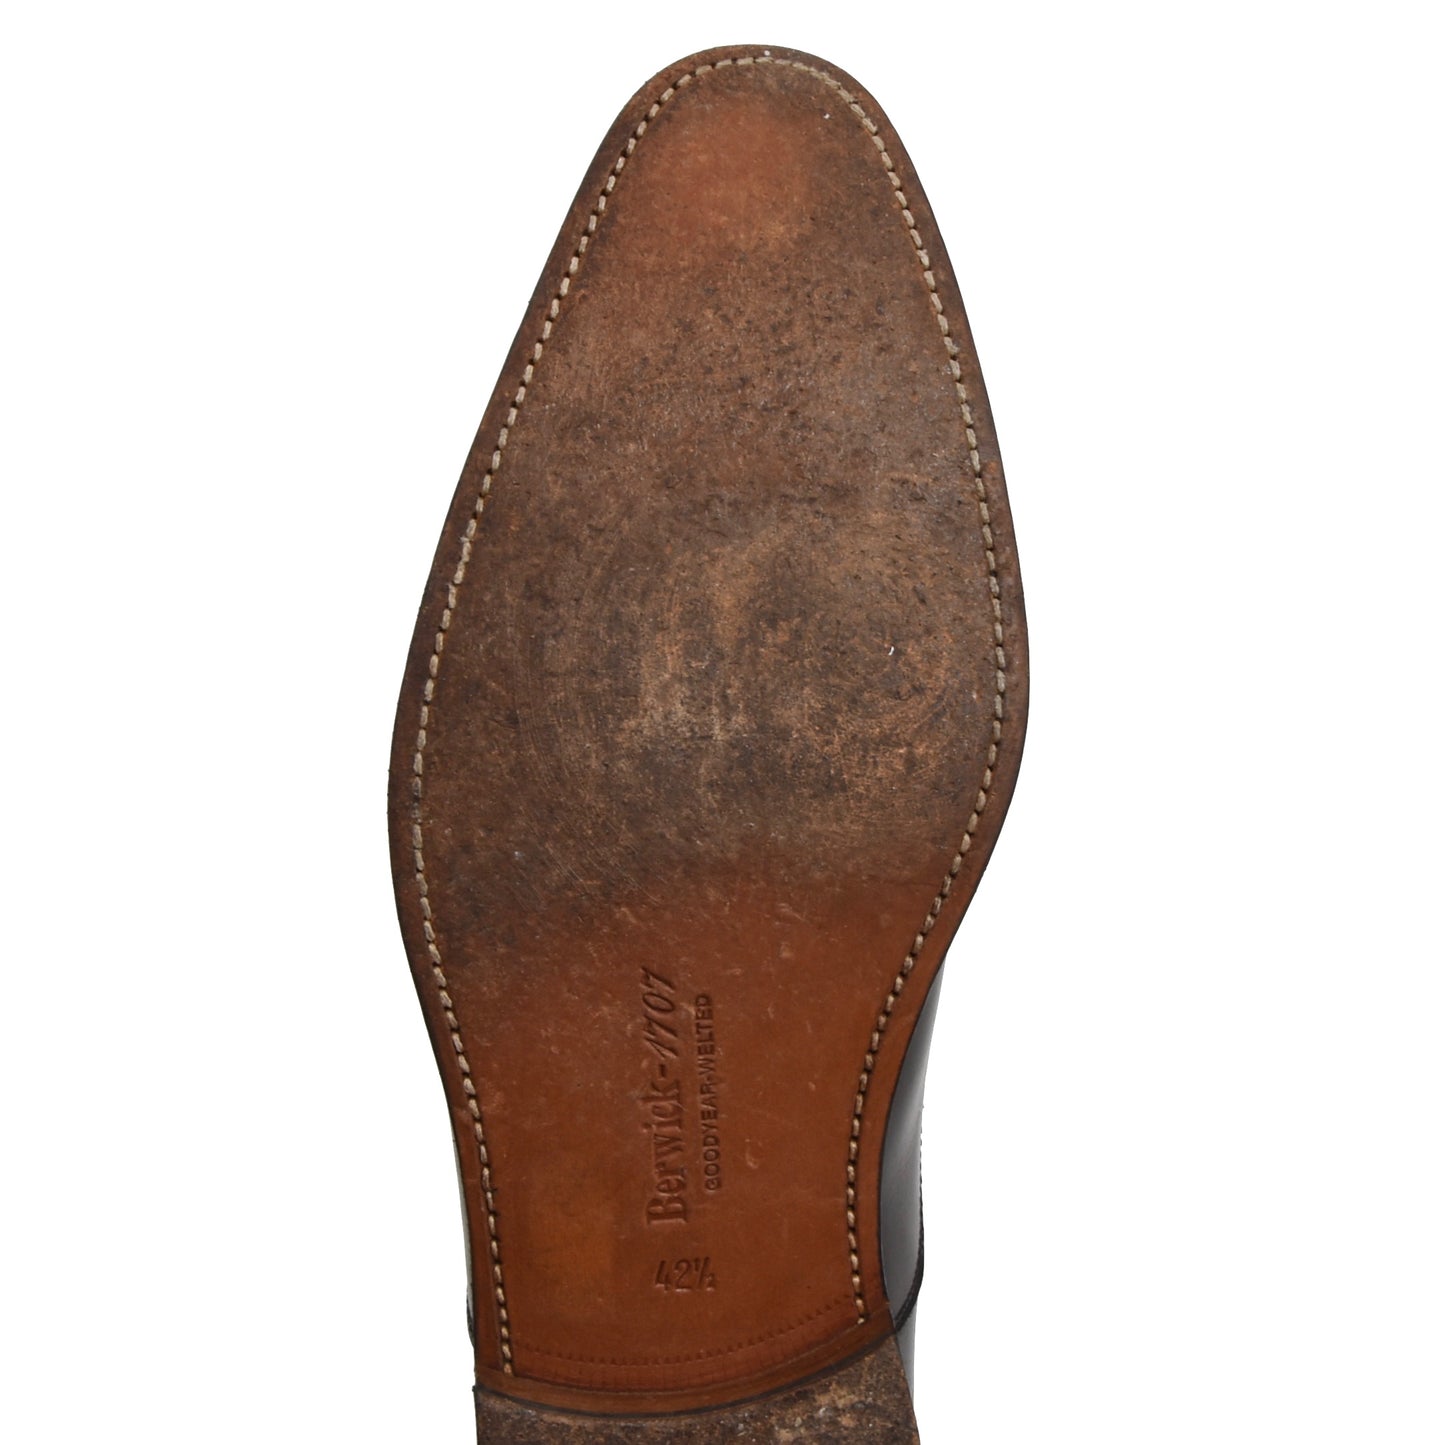 Berwick 1707 Balmoral Shoes Size 42.5 - Black